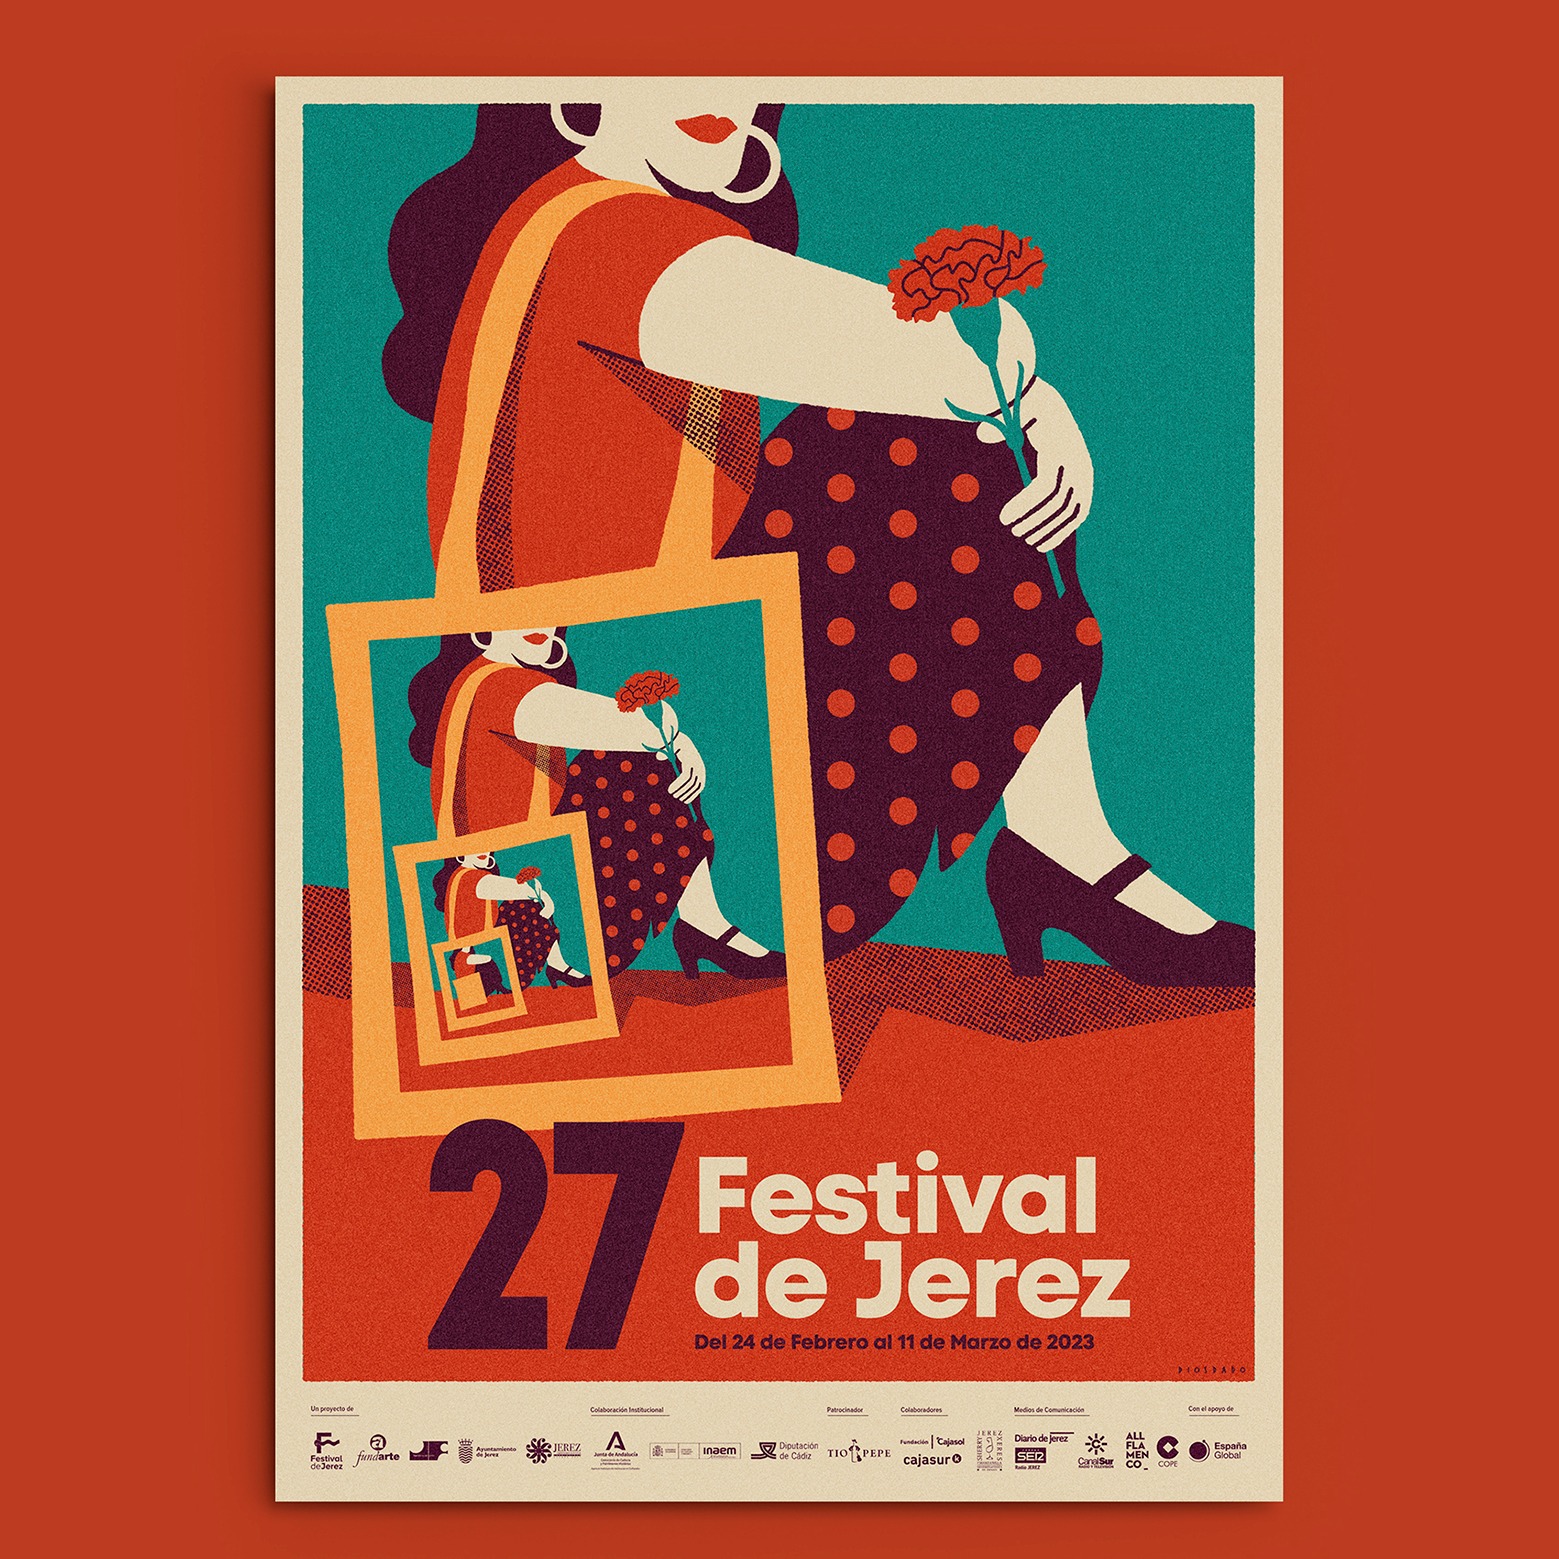 Annual flamenco festival in Jerez de la Frontera main image